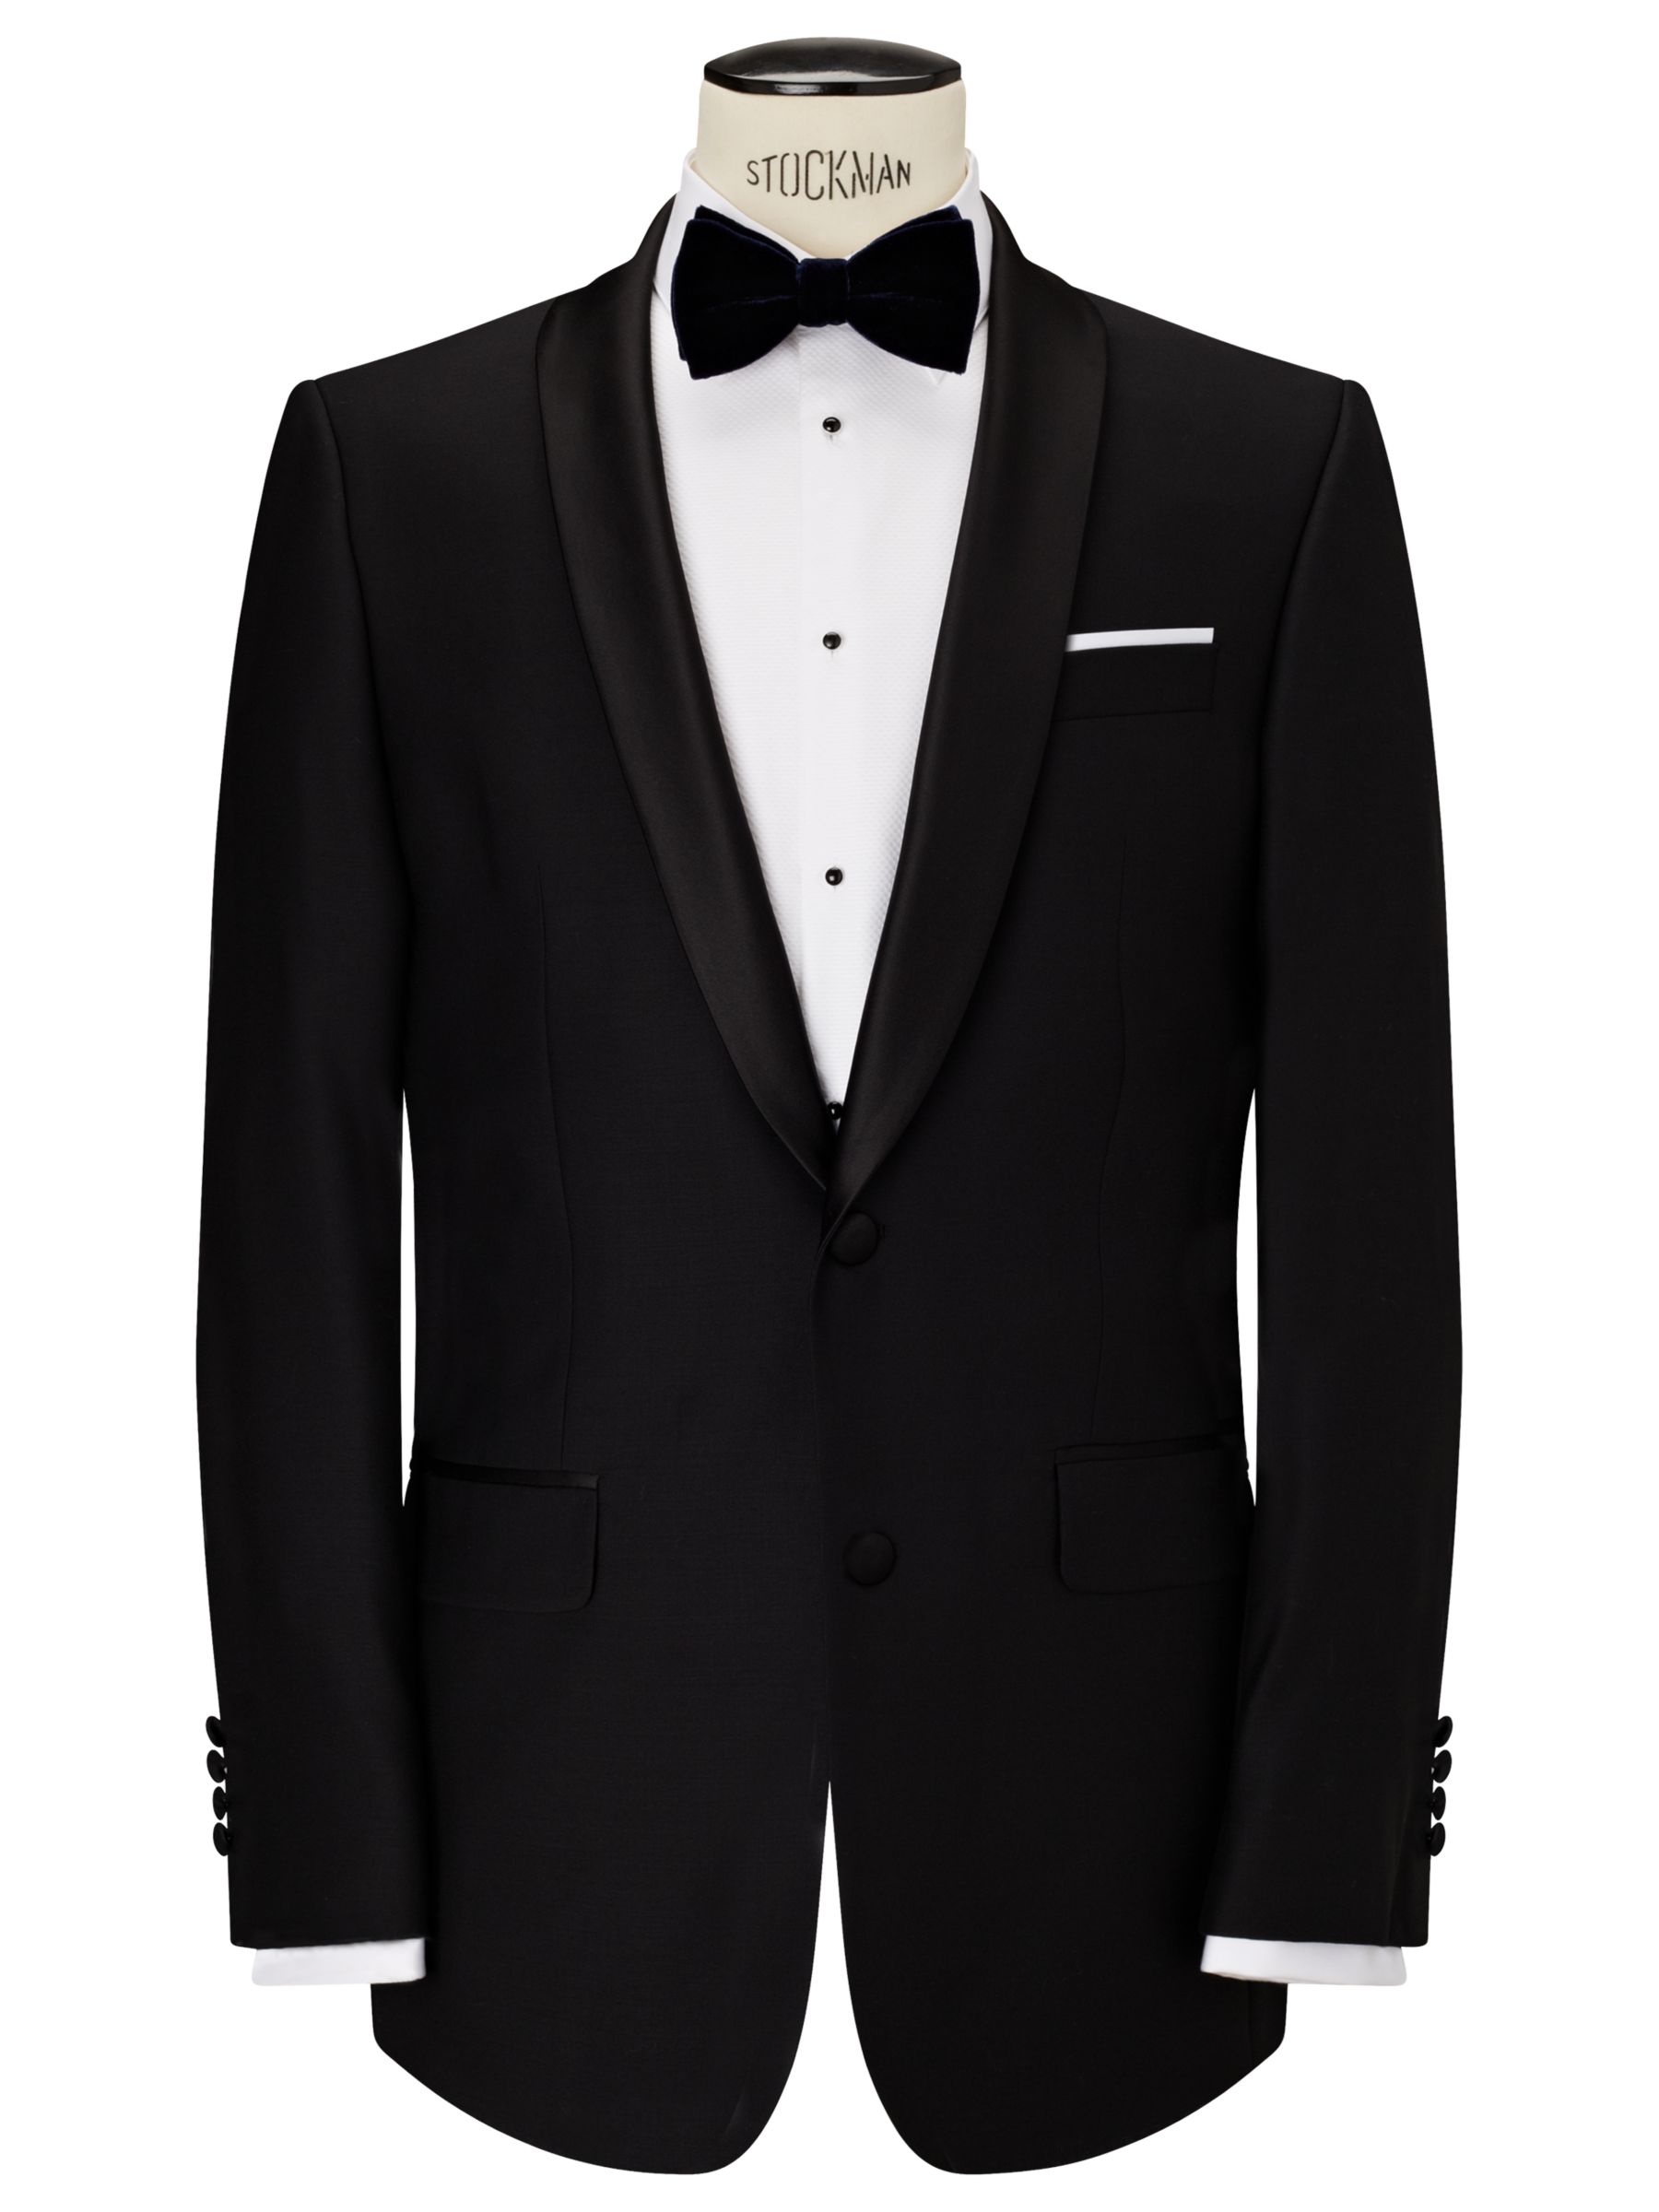 Buy John Lewis Shawl Lapel Dress Suit Jacket, Black | John Lewis